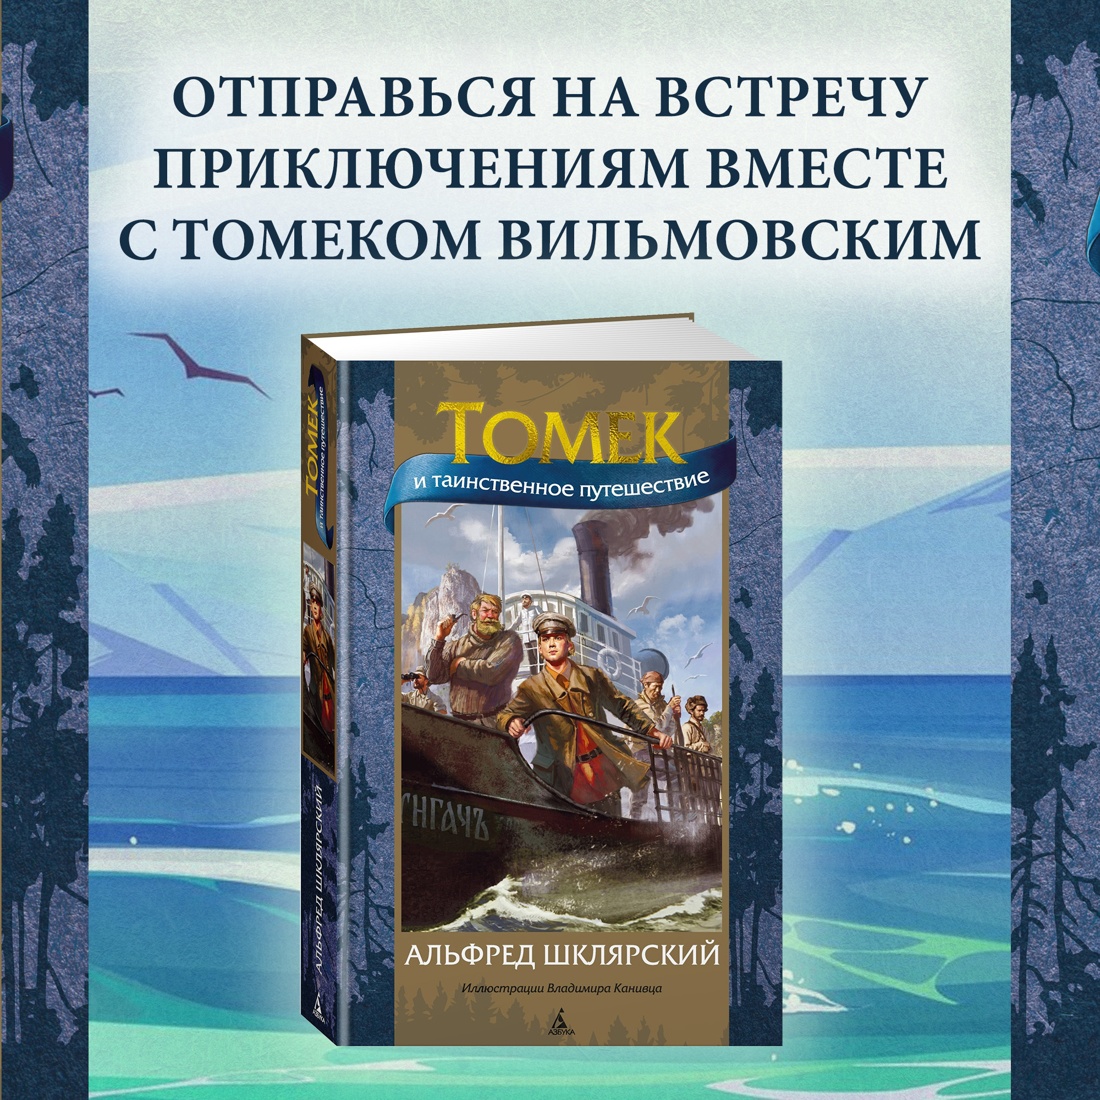 Промо материал к книге "Томек и таинственное путешествие" №0